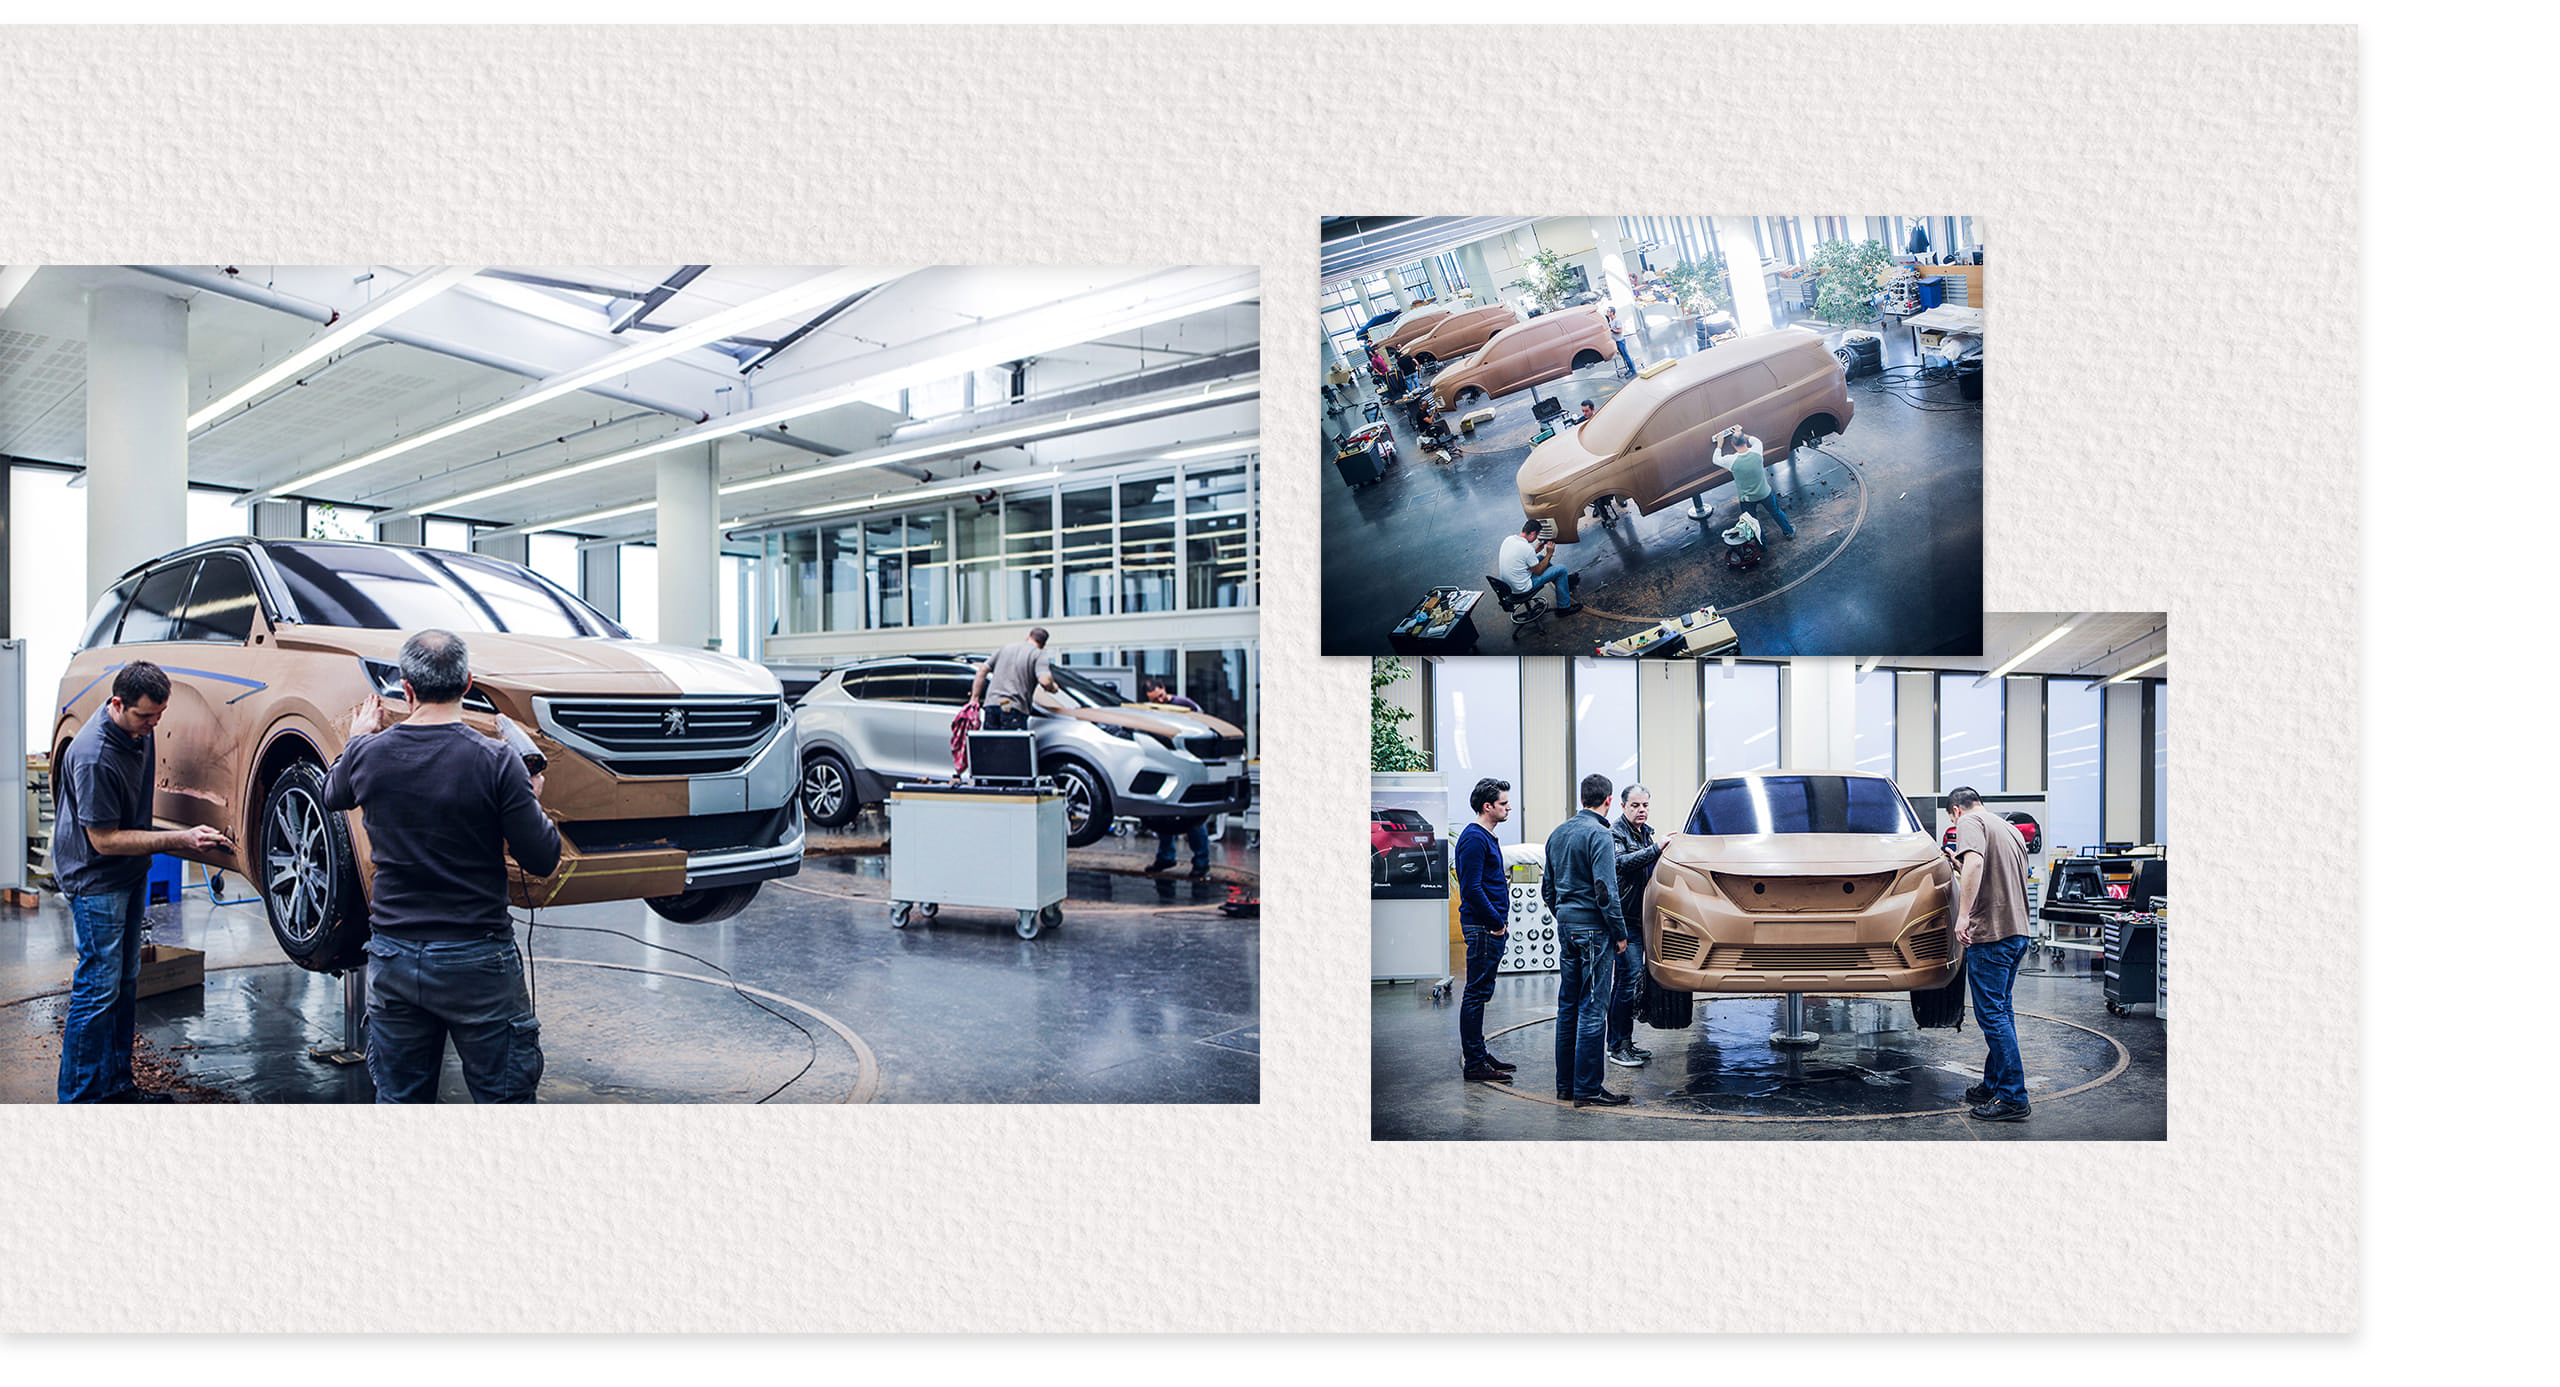 Peugeot triển khai chương trình tri ân Khách hàng cuối năm 2019 | Peugeot Nha Trang | 0983688018